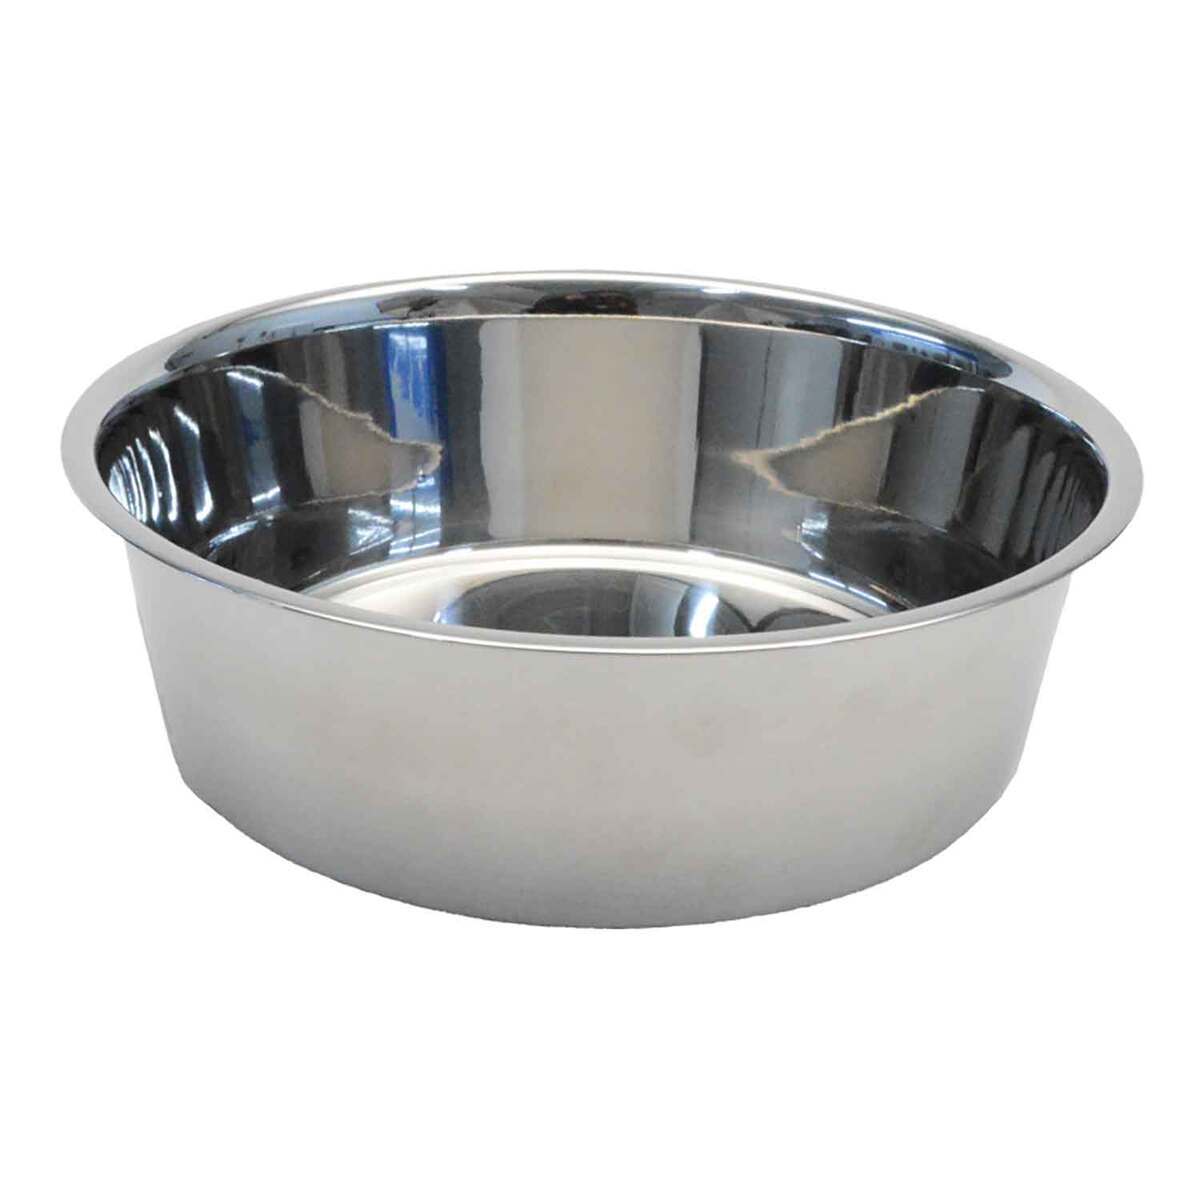 https://www.sportsmans.com/medias/coastal-pet-products-maslow-non-skid-heavy-duty-stainless-steel-dog-bowl-64-oz-1812502-1.jpg?context=bWFzdGVyfGltYWdlc3w0NTY4N3xpbWFnZS9qcGVnfGgyNS9oMjAvMTEyODMyMTEyODg2MDYvMTIwMC1jb252ZXJzaW9uRm9ybWF0X2Jhc2UtY29udmVyc2lvbkZvcm1hdF9zbXctMTgxMjUwMi0xLmpwZ3xiNDM1MTQxMWQyOWI4MzA3MTZmMzcwOTZjNGUzYzYzYTNiYmZlZWFmNWE3NDIzNzA4OTk4MjU4OWRhNGNlMGMz